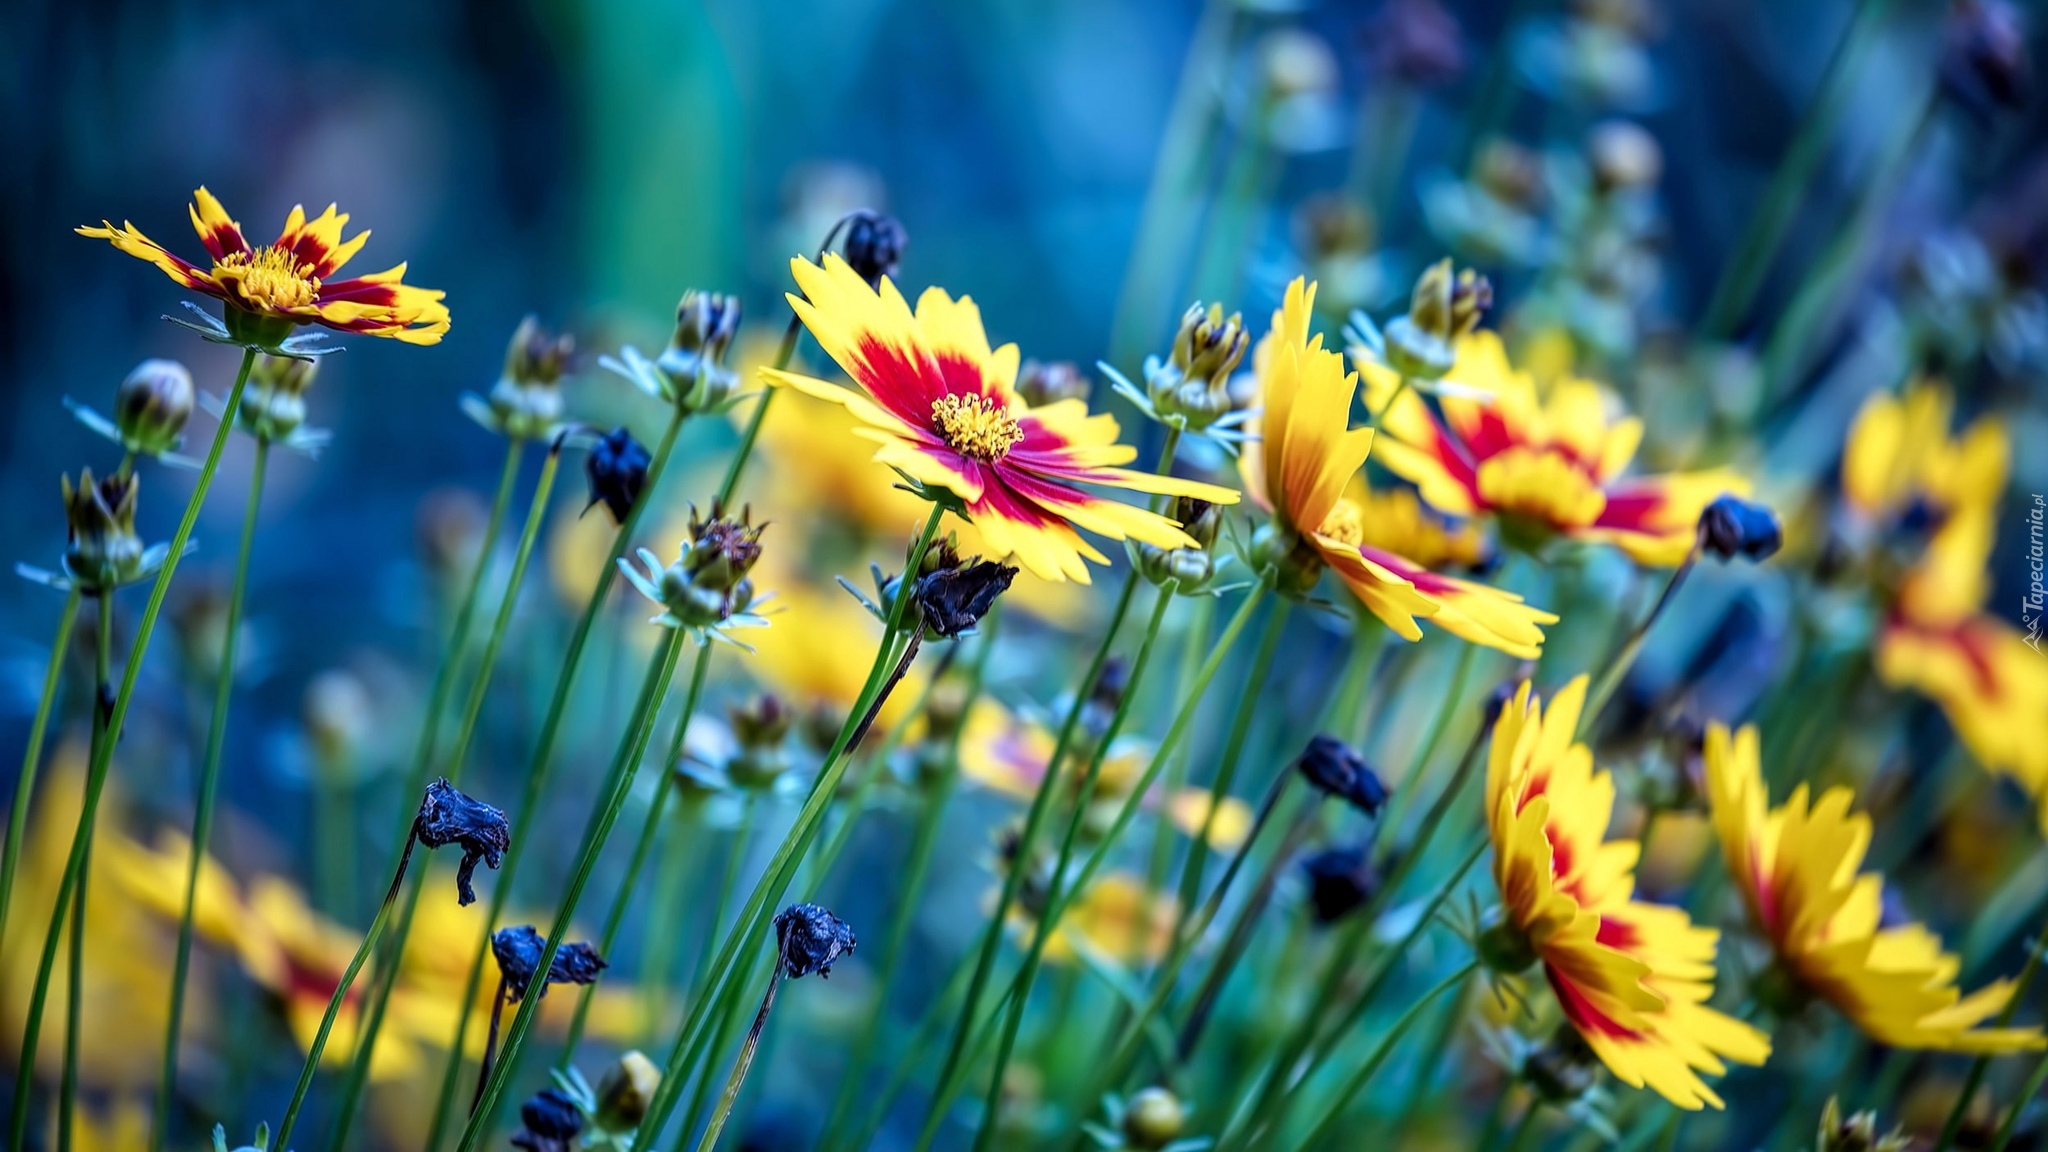 Kwiaty, Nachyłki Ladybird, łąka